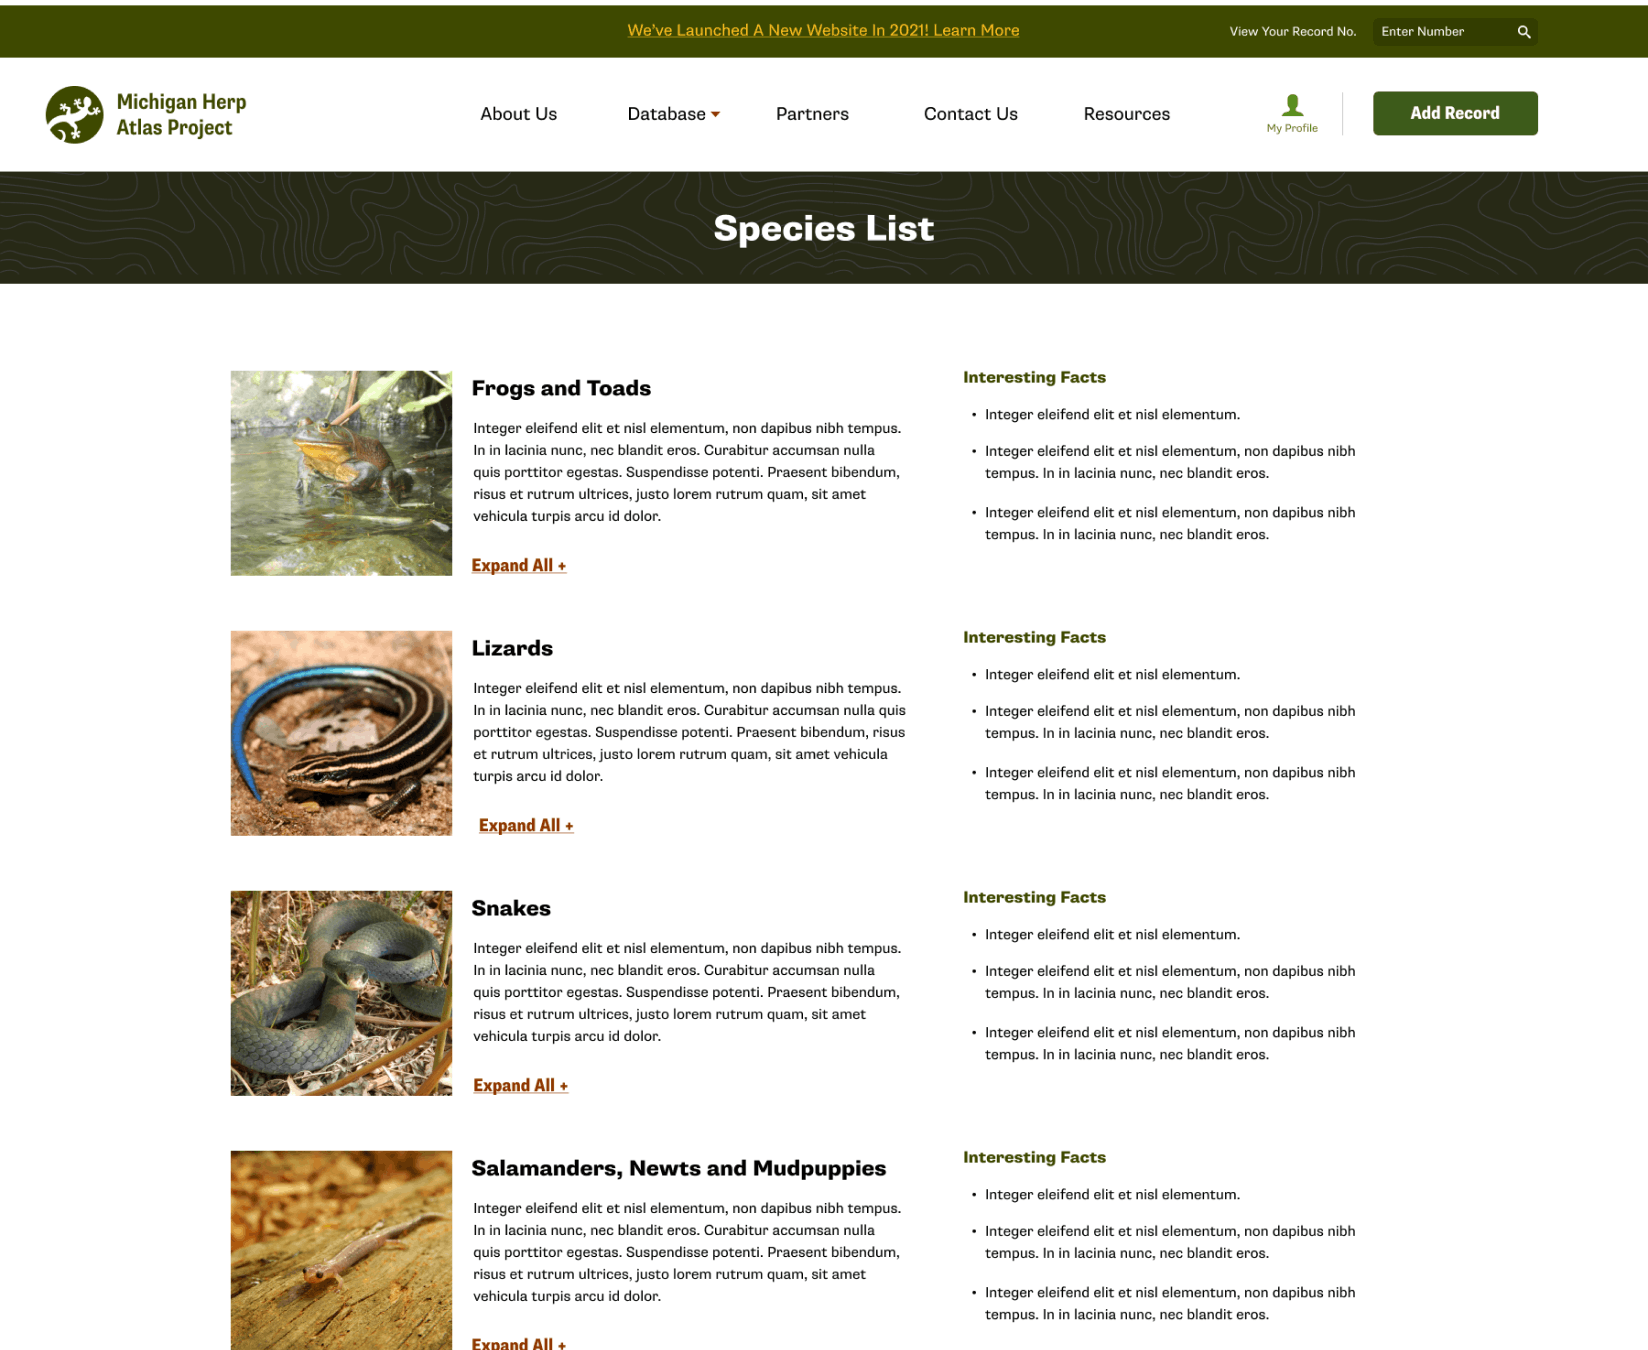 Species List Screen for the Michigan Herp Atlas